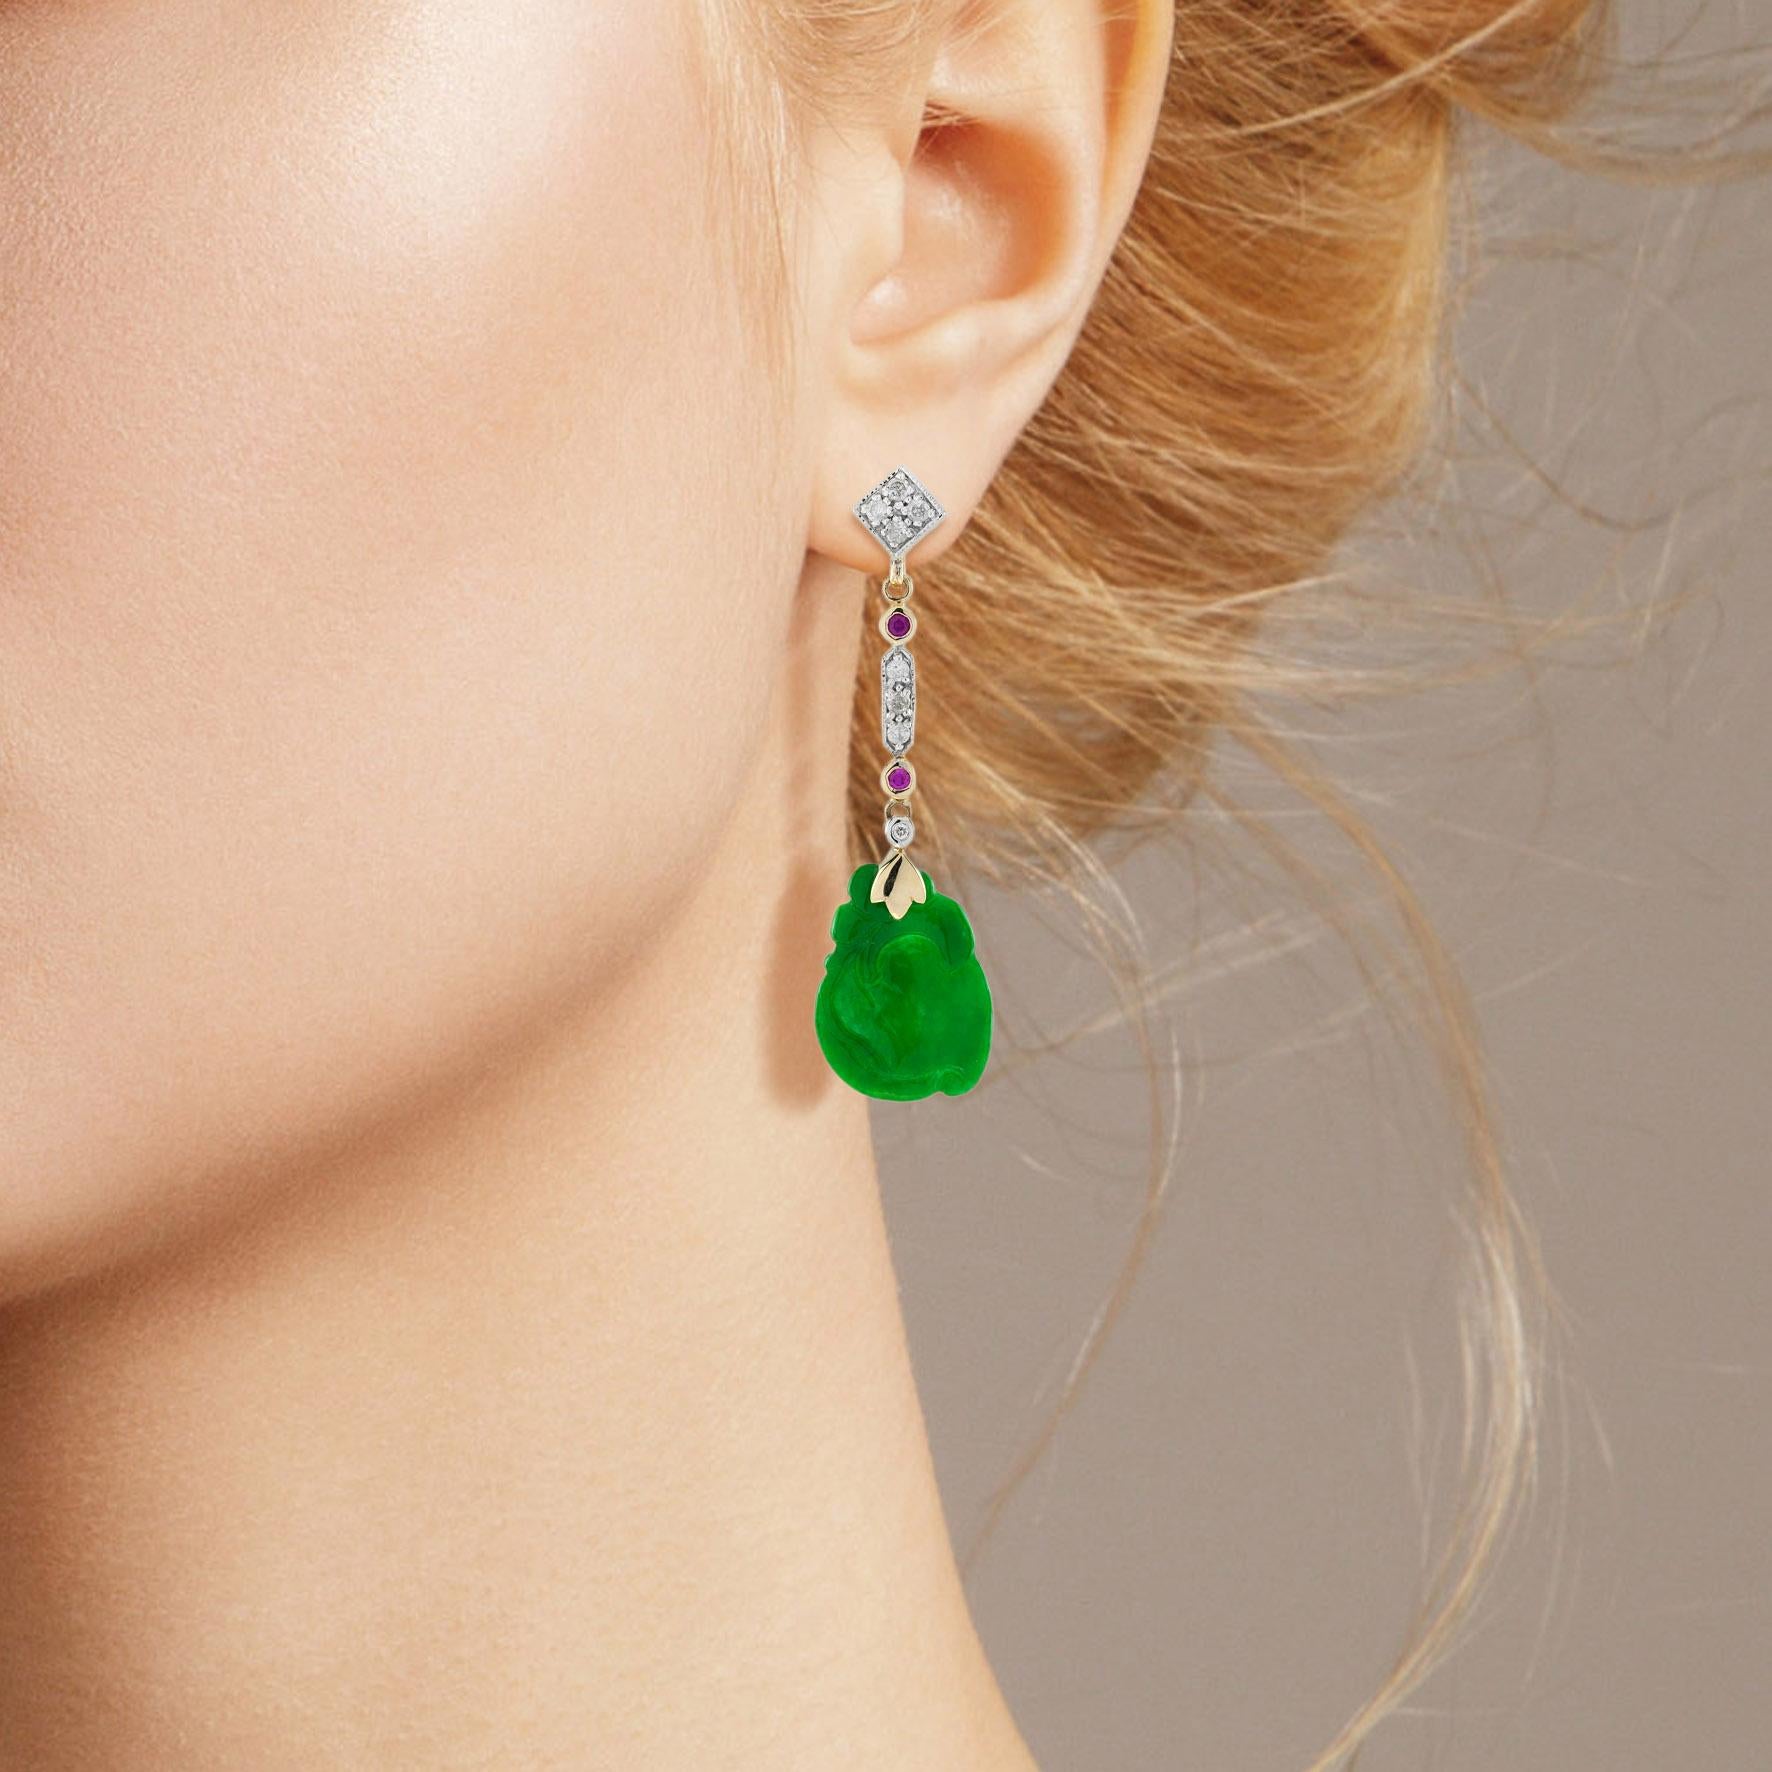 Die natürliche Jade in diesen schönen Ohrringen hat eine ganz besondere Form. Beide Stücke haben eine kräftige grüne Farbe und gute Schnitzereien. Die Jade hängt in einer Fassung aus 9-karätigem Gelbgold mit einem Rubin und einem Diamanten an der